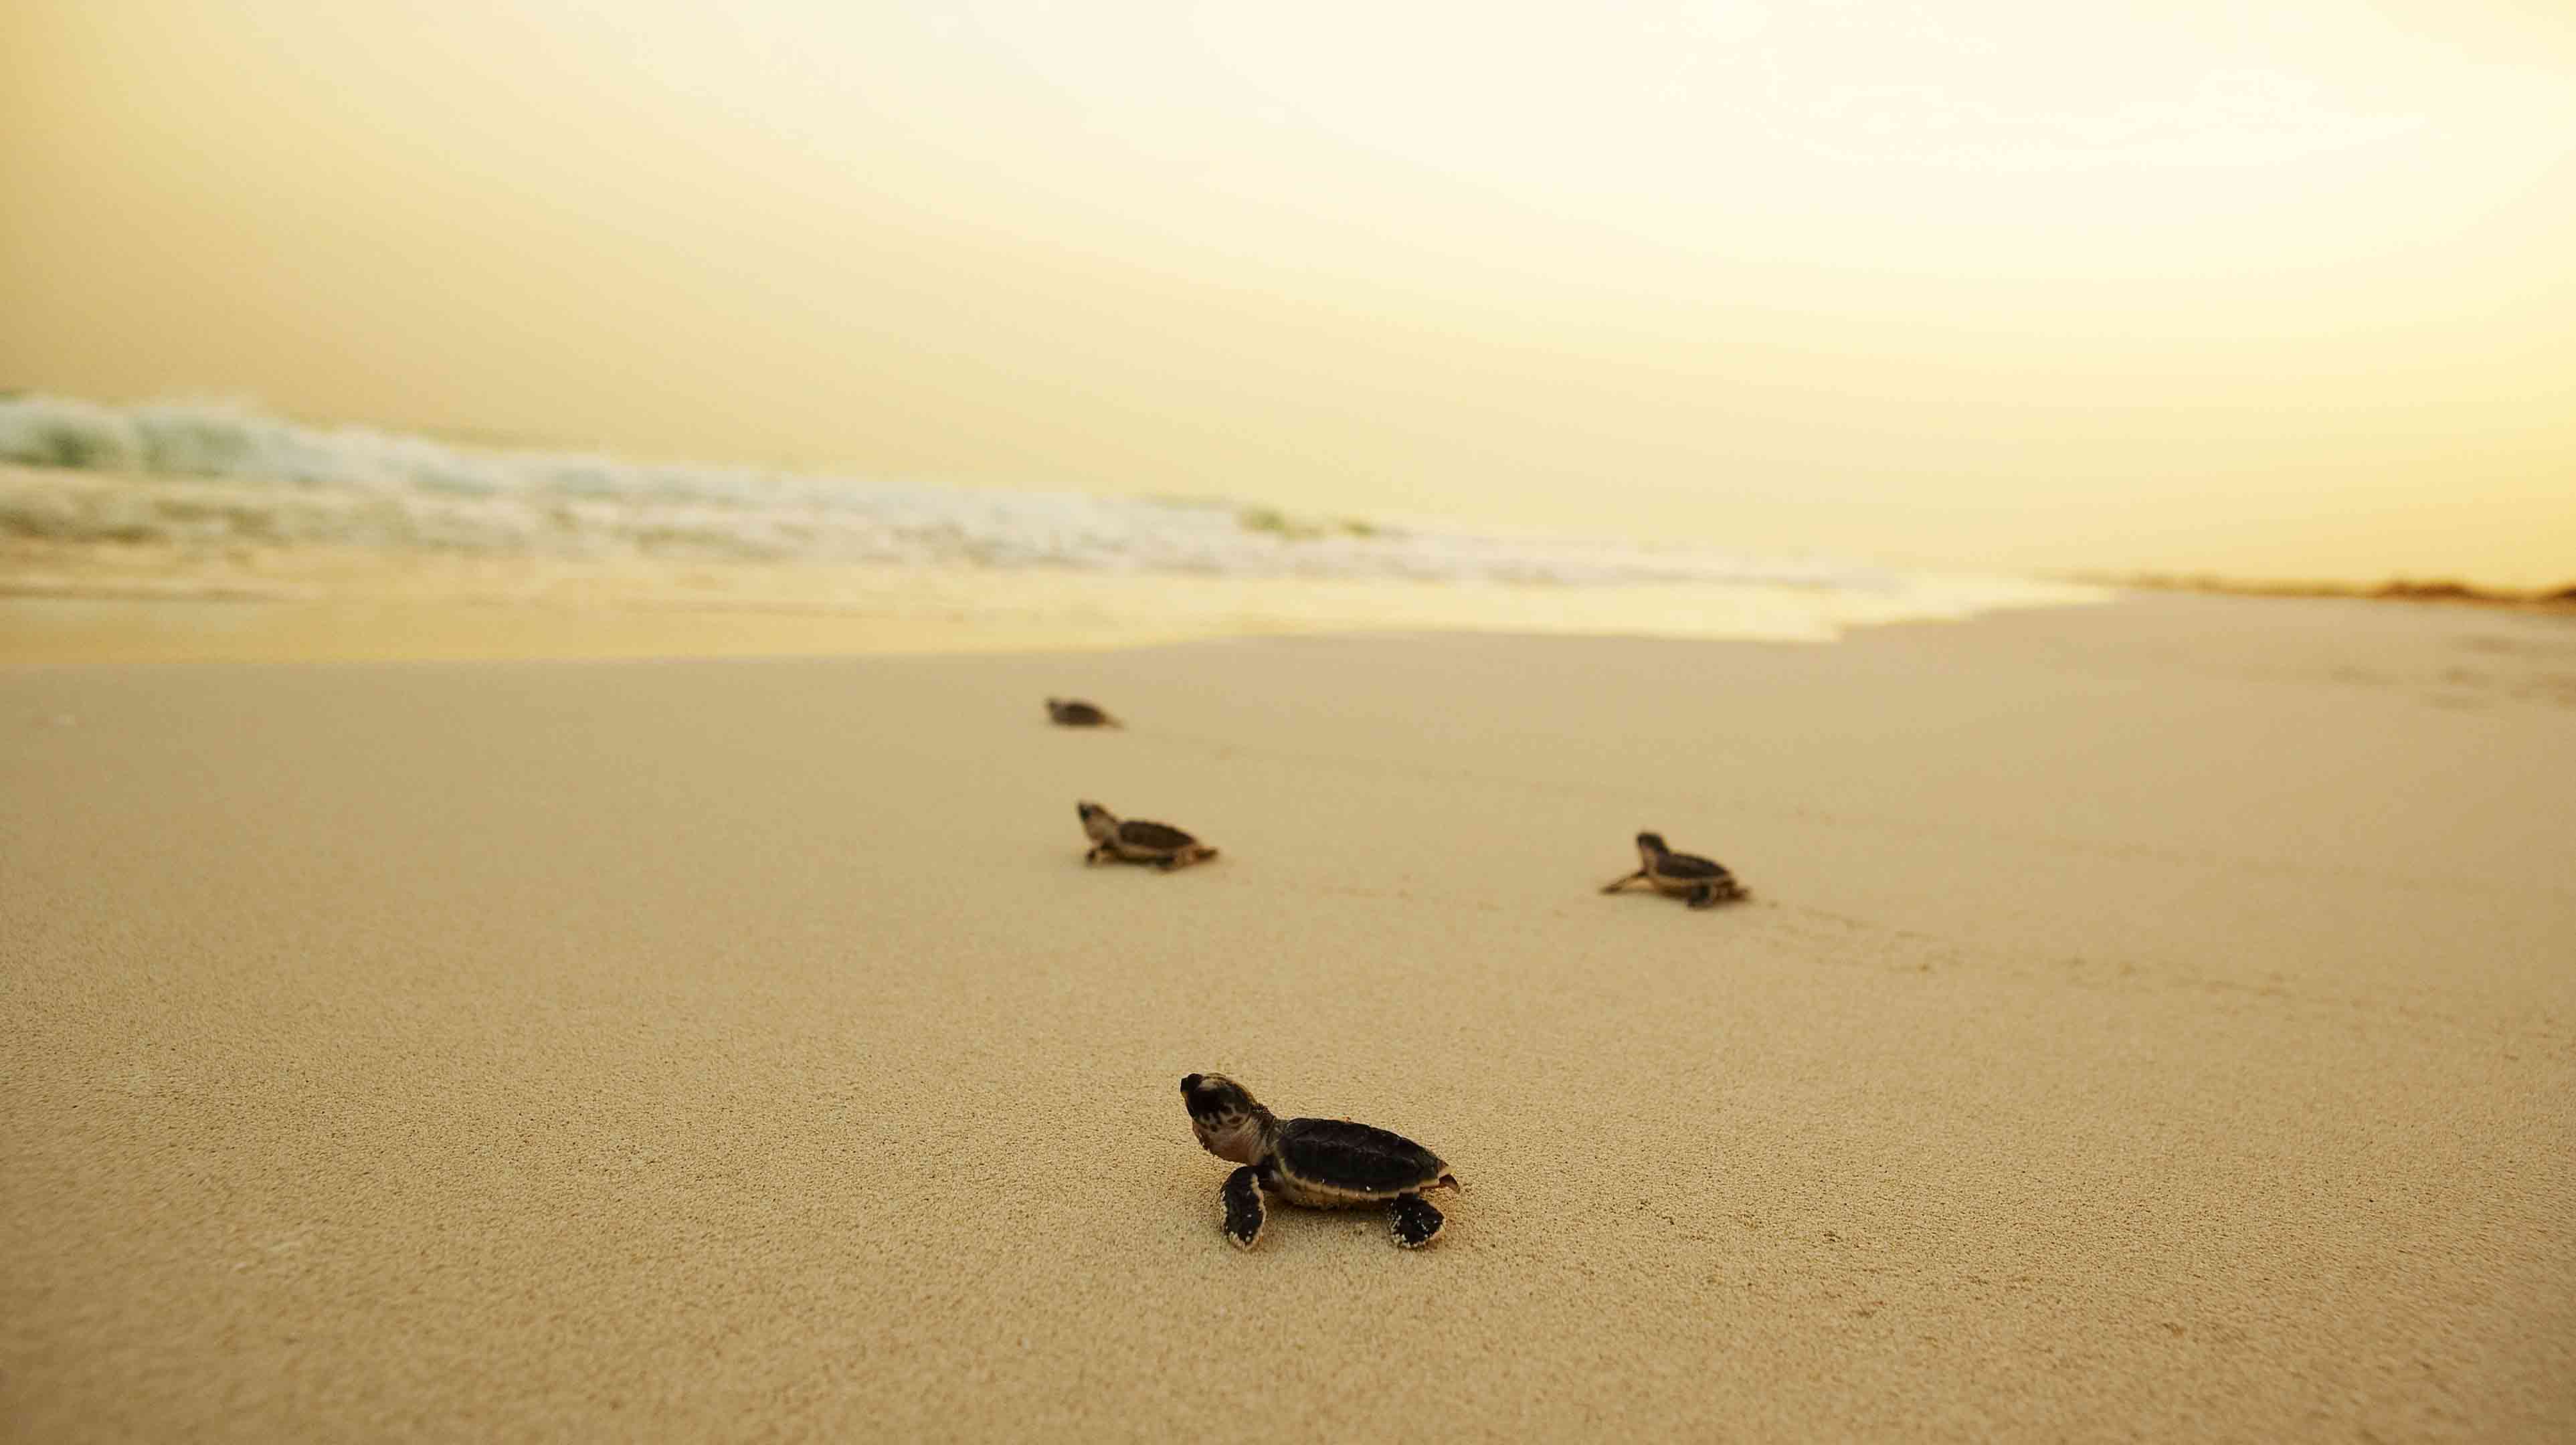 سلاحف صغيرة تمشي فوق الرمال الذهبية نحو ماء البحر في إحدى جزر أبوظبي